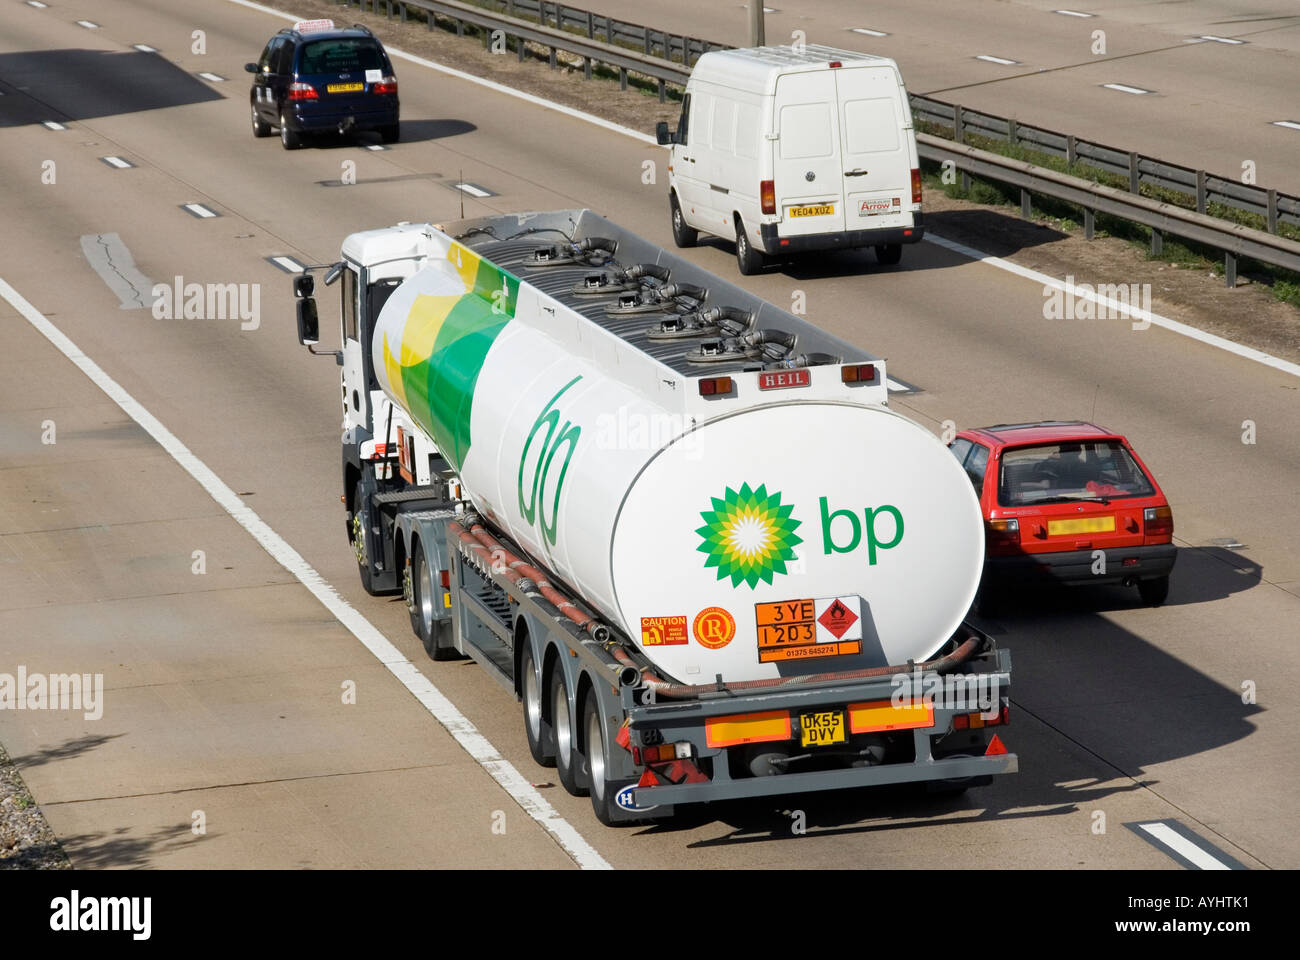 Logo de vue arrière aérienne BP sur camion-citerne à essence articulé dans la circulation conduisant l'autoroute M25 avec panneau d'information Hazchem Angleterre Royaume-Uni Banque D'Images